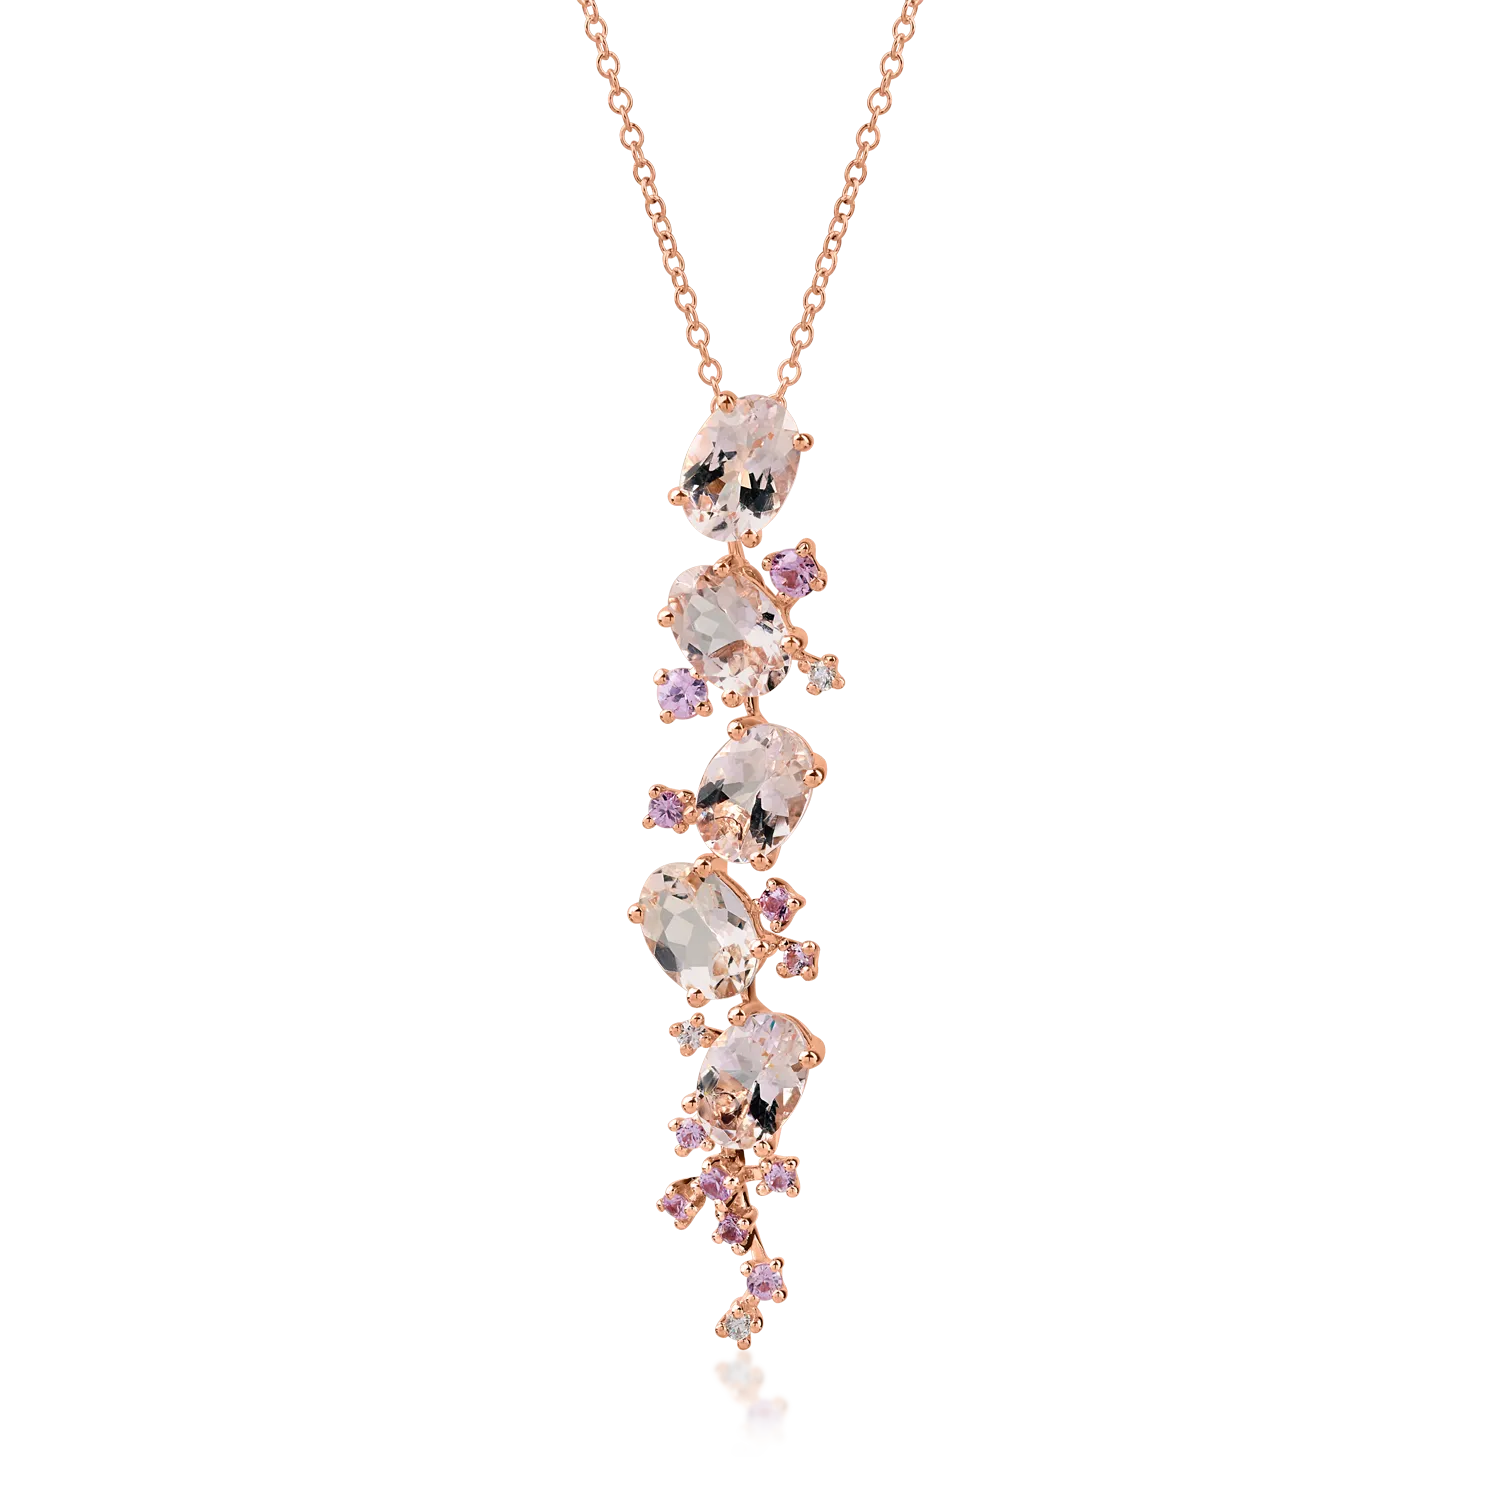 Rose gold pendant chain with 4.2ct precious and semi-precious stones